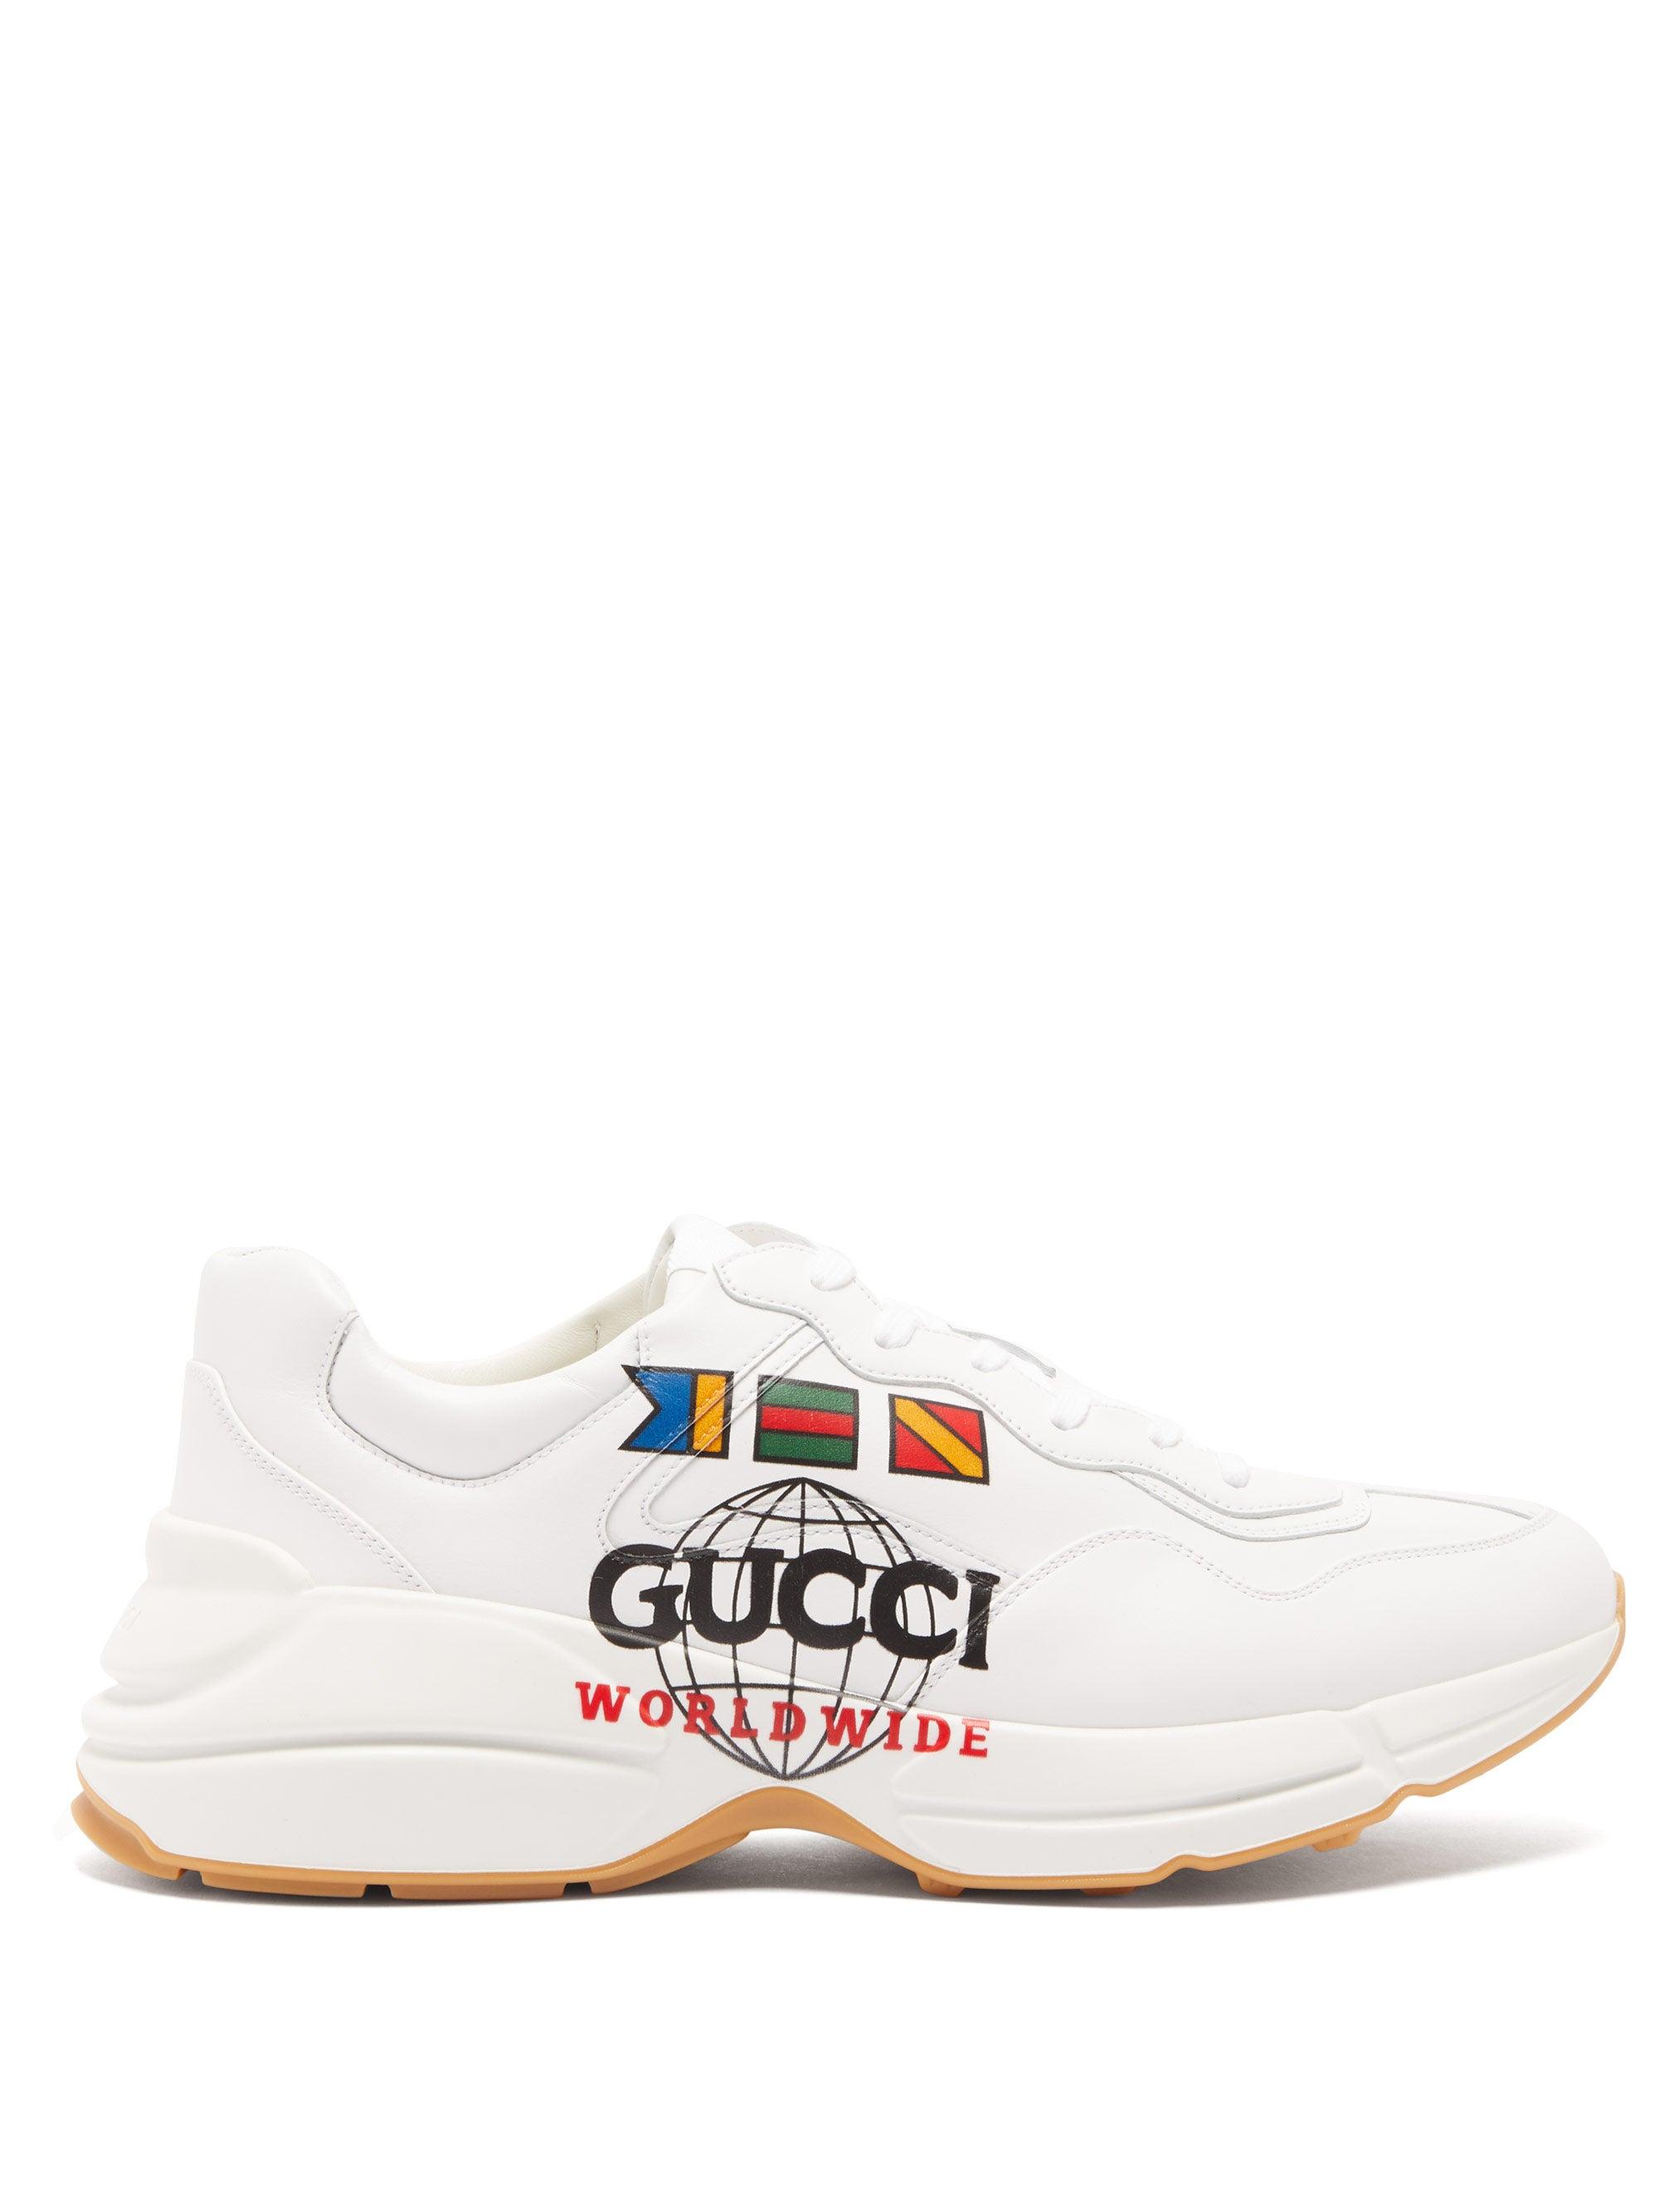 Gucci Rhyton Worldwide Flag-Printed Sneaker